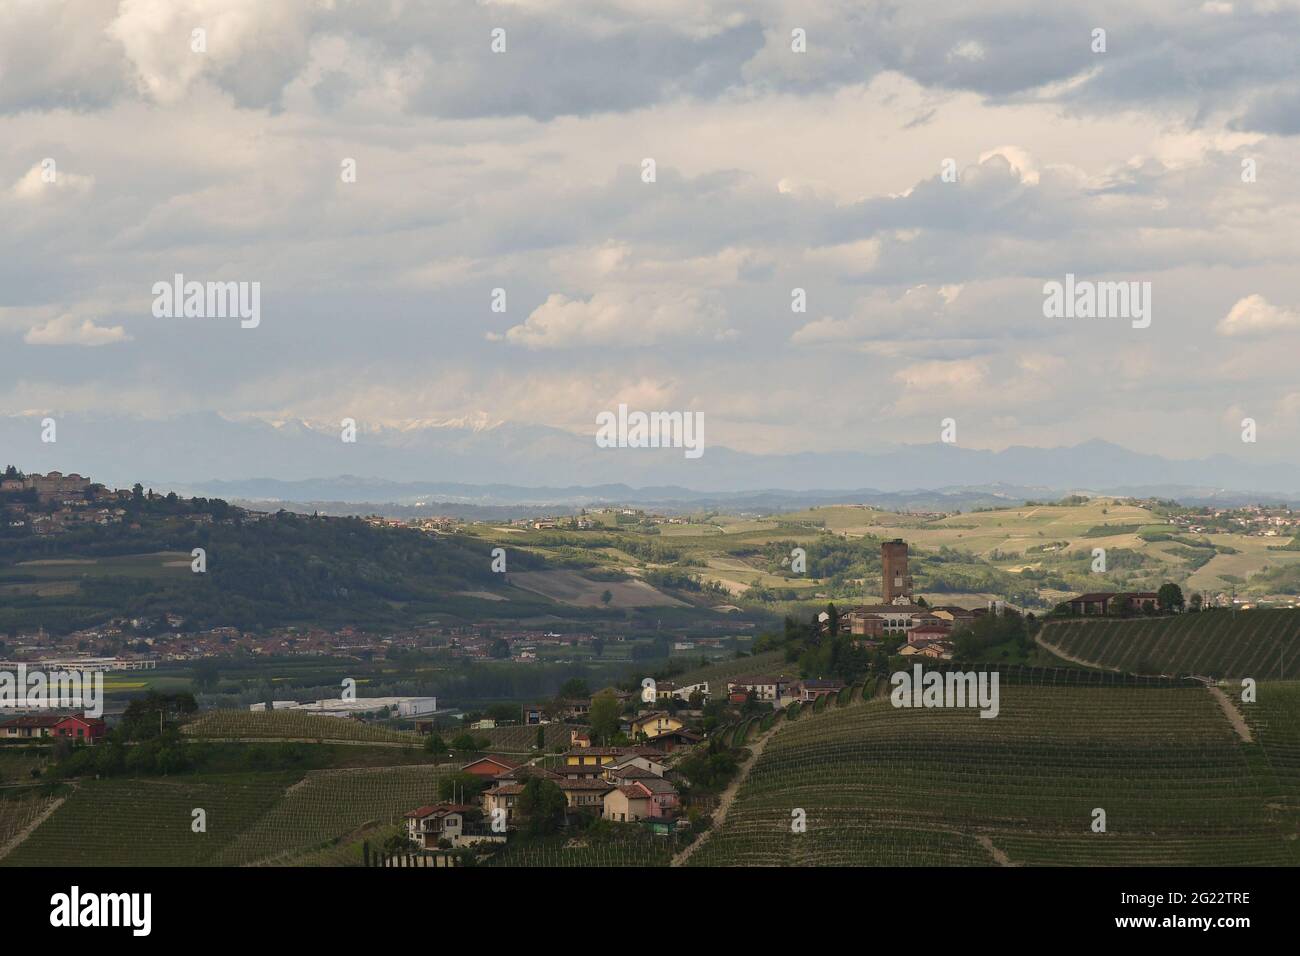 Vista panoramica sulle colline dei vigneti delle Langhe, patrimonio dell'umanità dell'UNESCO, con il borgo medievale di Barbaresco in una nuvolosa giornata di primavera, Cuneo, Piemonte, Italia Foto Stock